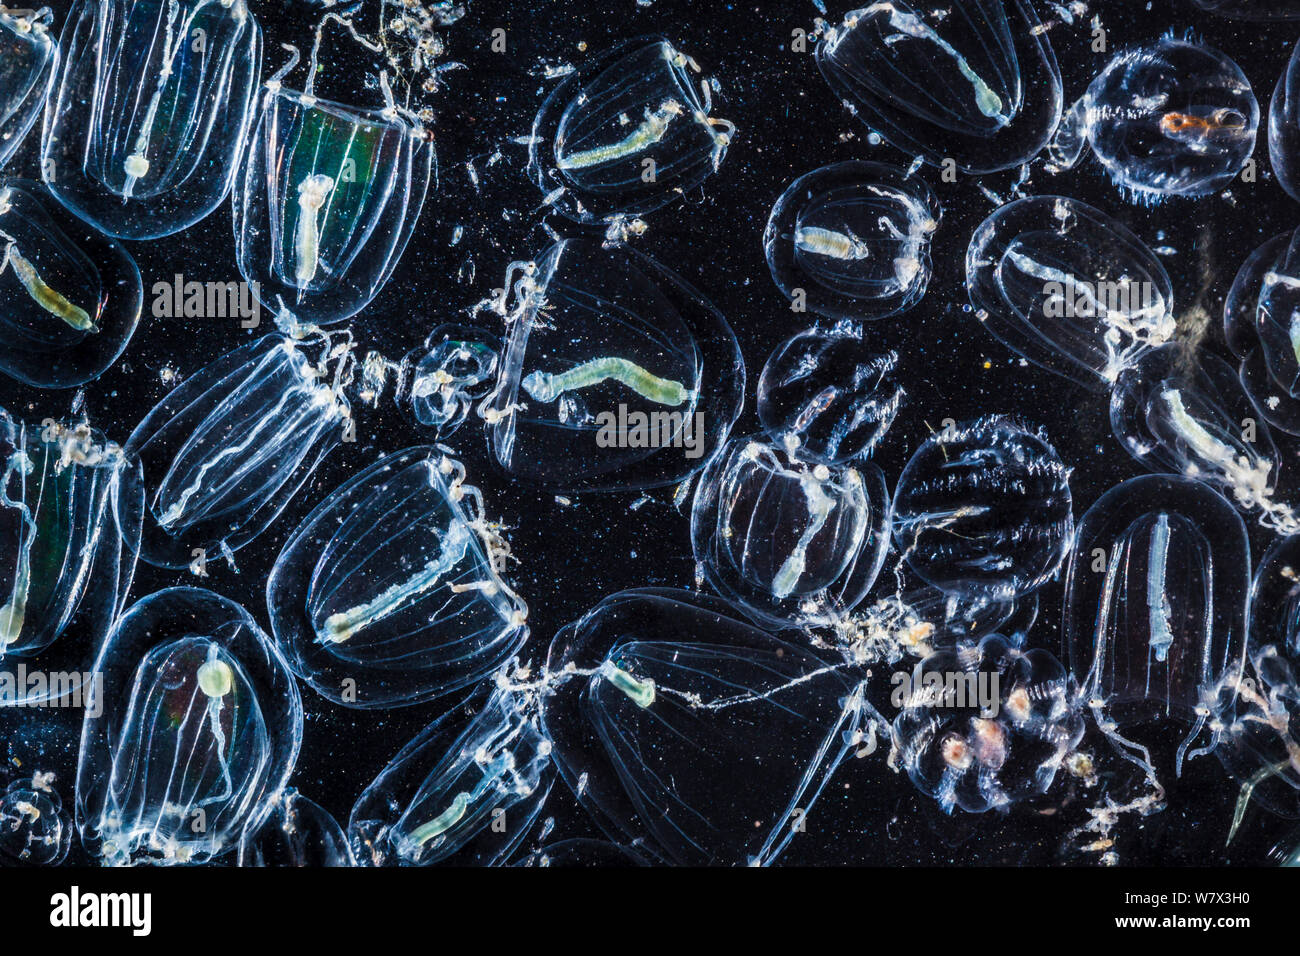 Campione di flora marina raccolti con una rete di plancton, compreso il mare-Uva spina (Pleurobrchia pileus) e Rathkea sp. Isle of Mull, Scotland, Regno Unito. Giugno. Foto Stock